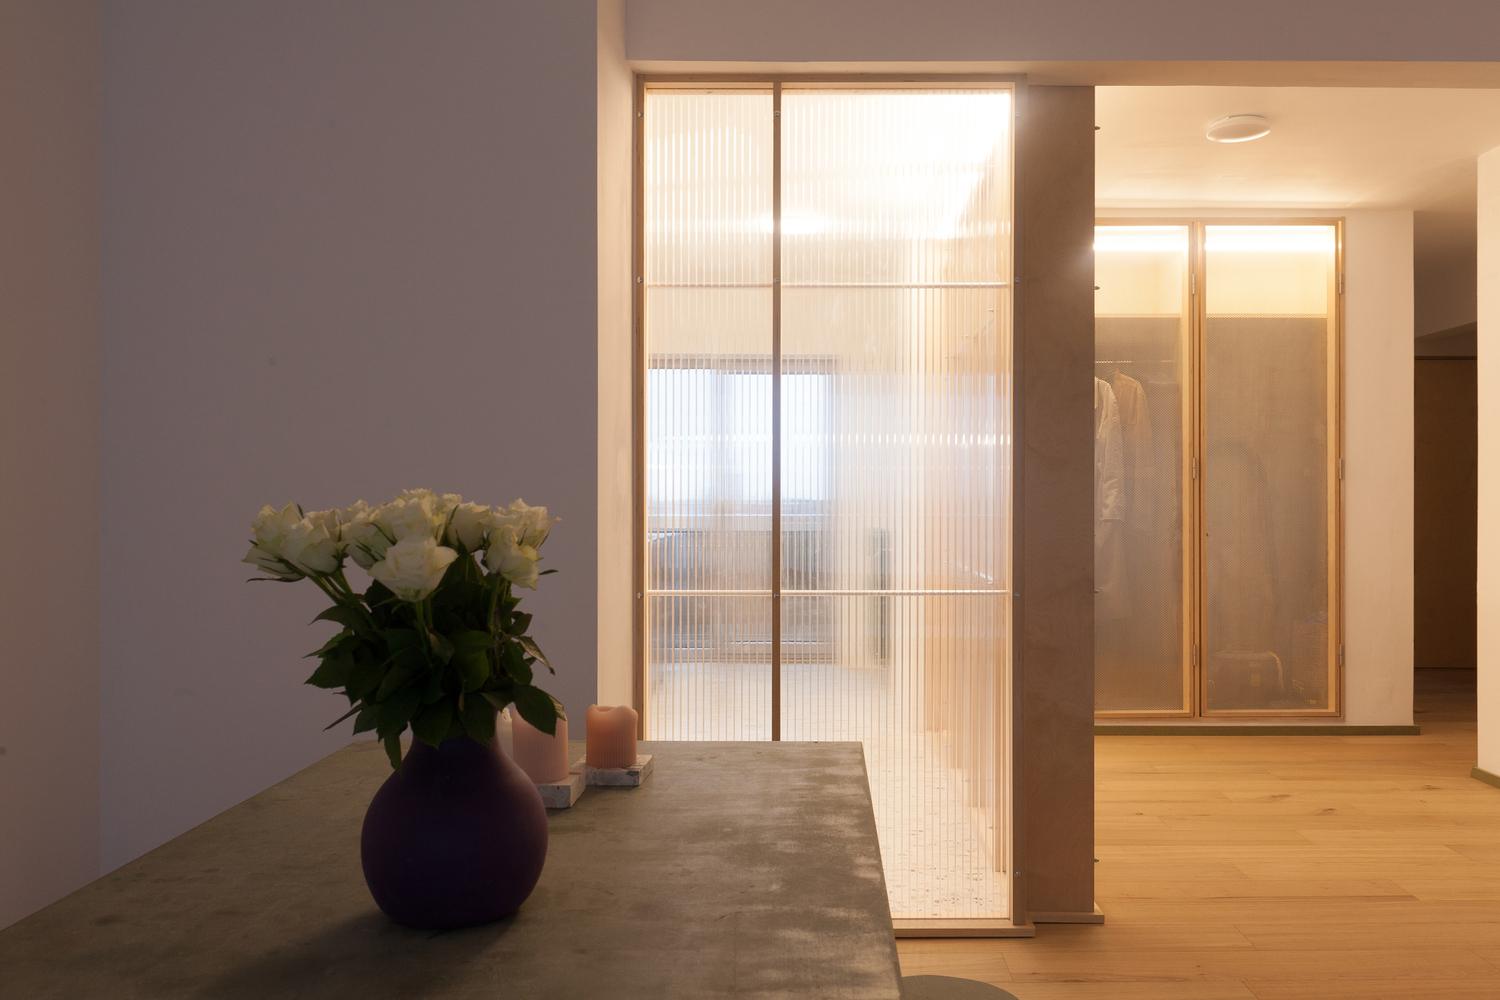 簡約細緻比利時家居設計 暖意空間佈置更顯舒適